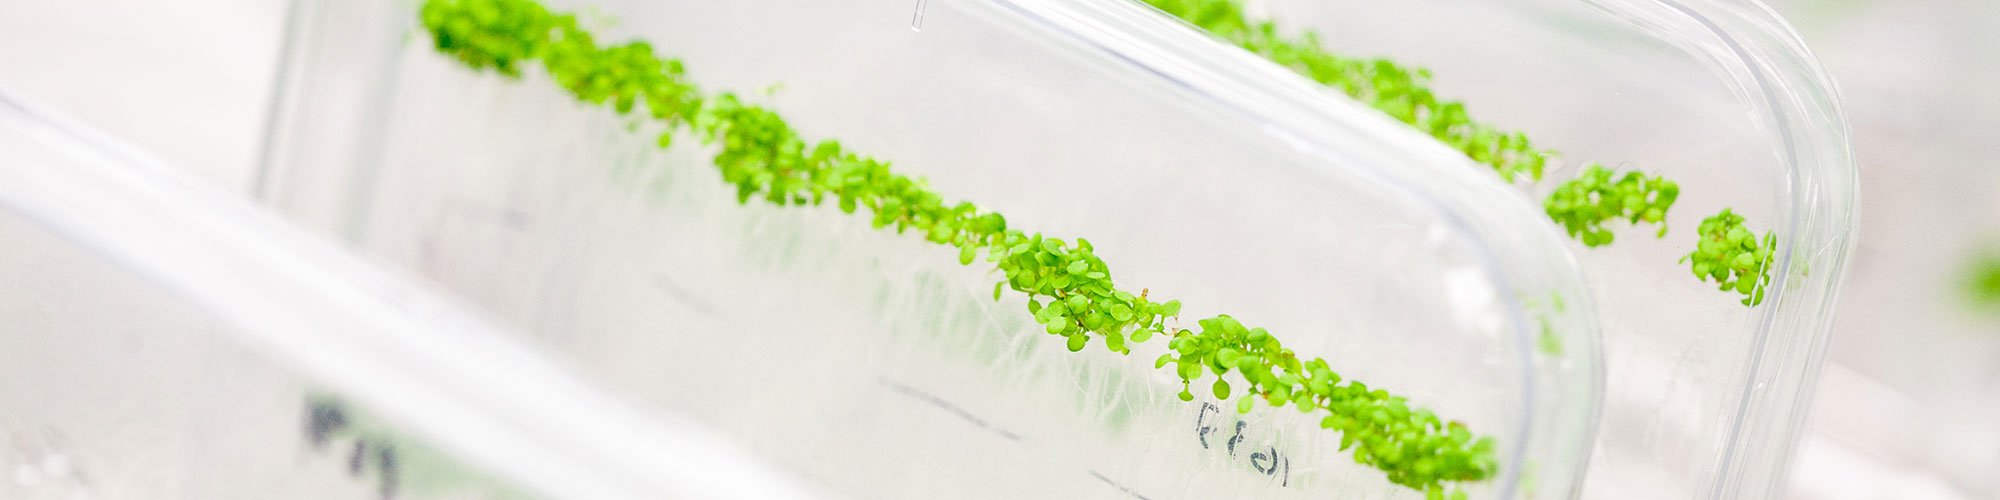 in-vitro-odling av växter. Foto.